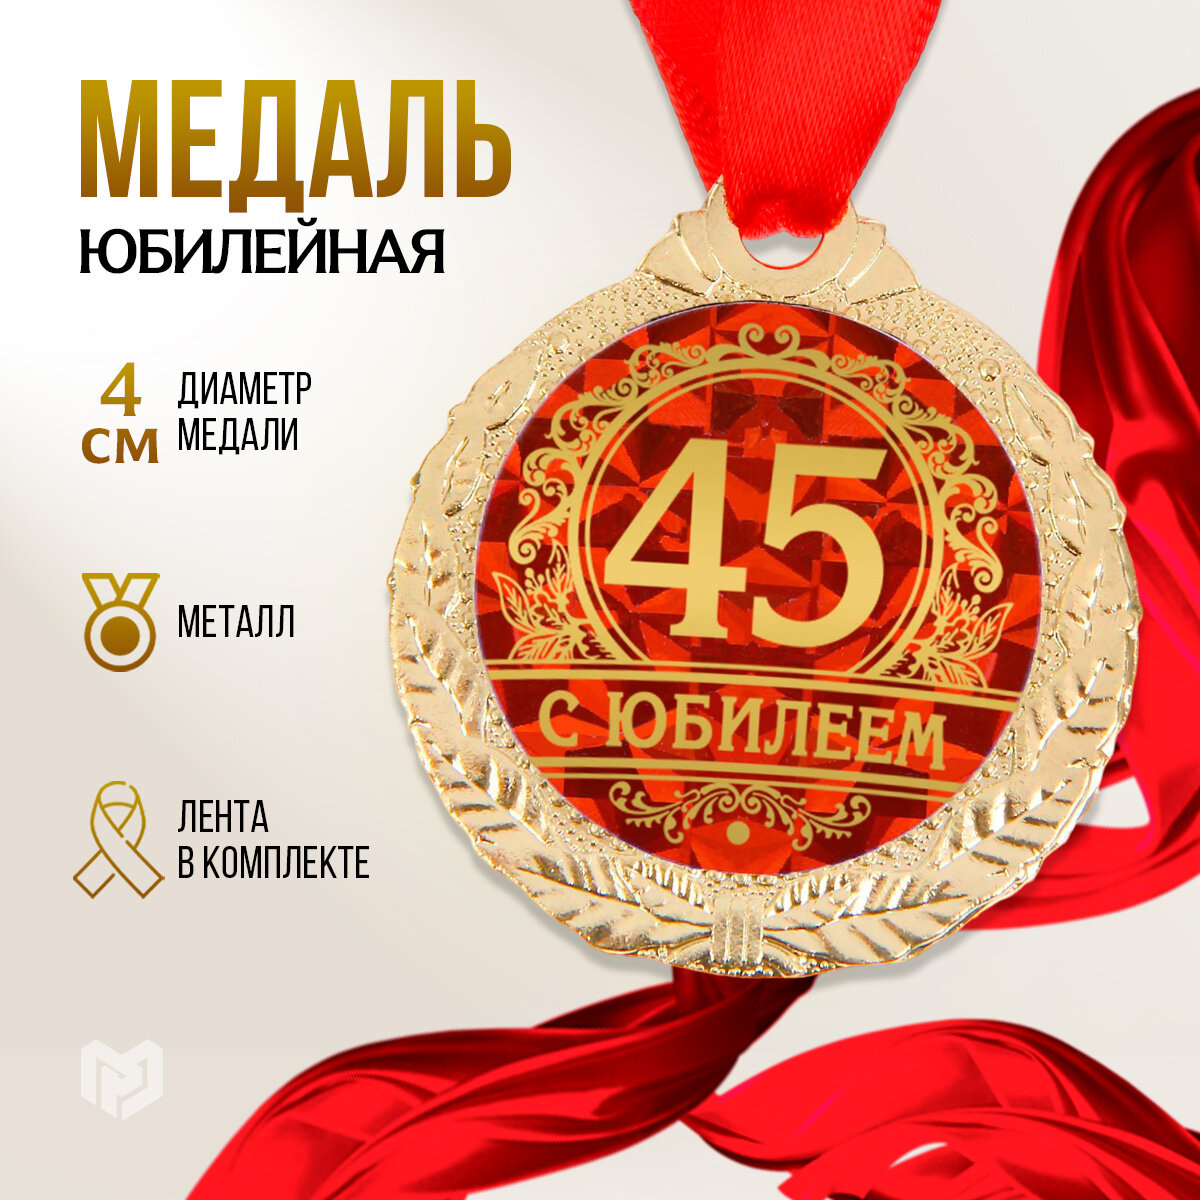 Медаль подарочная сувенирная "С юбилеем 45", диам - 4 см, металл